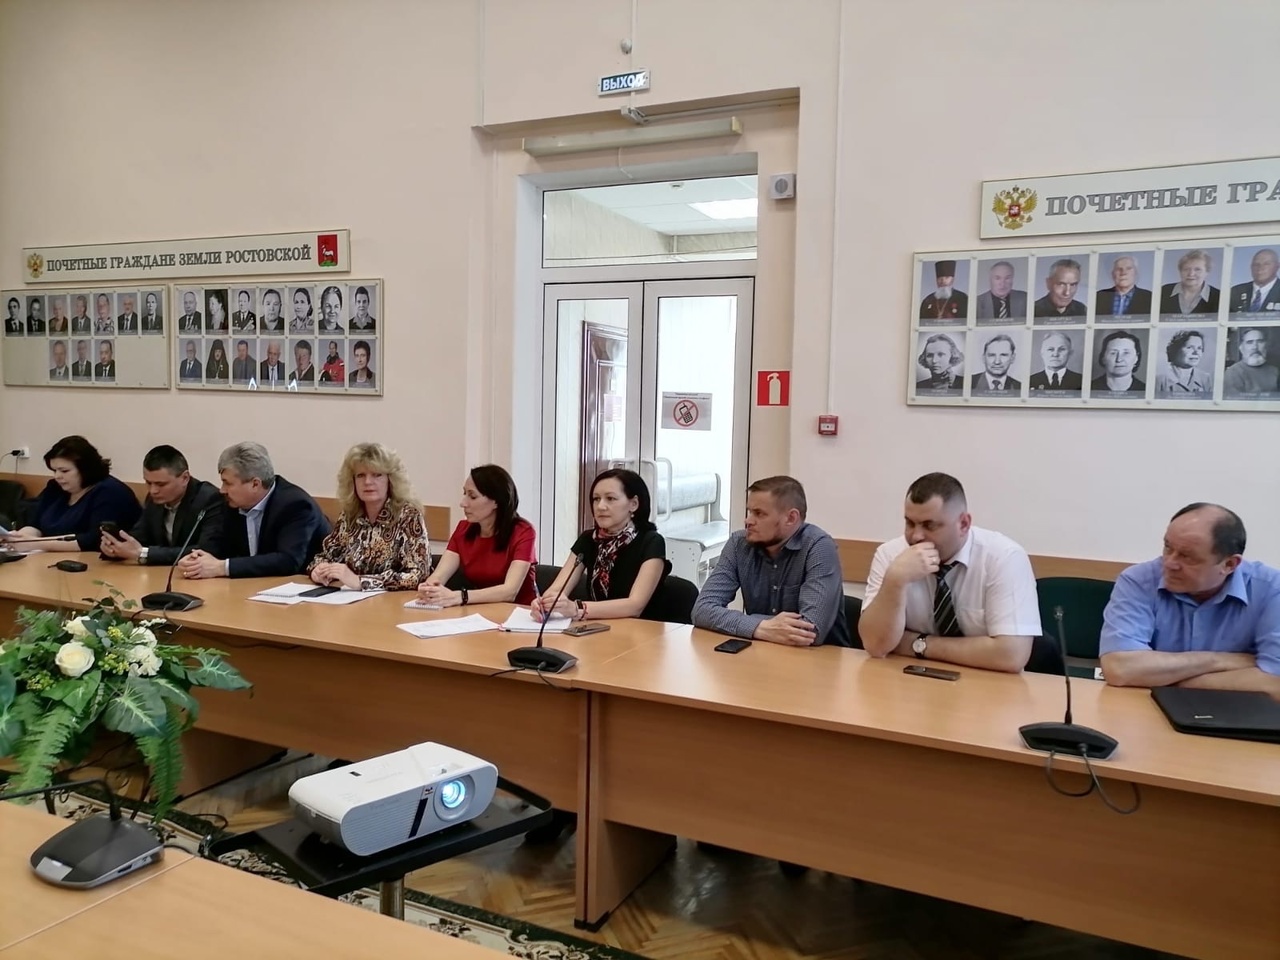 Господдержку промышленности и бизнеса в Ярославской области обсудили на встречах с предпринимателями